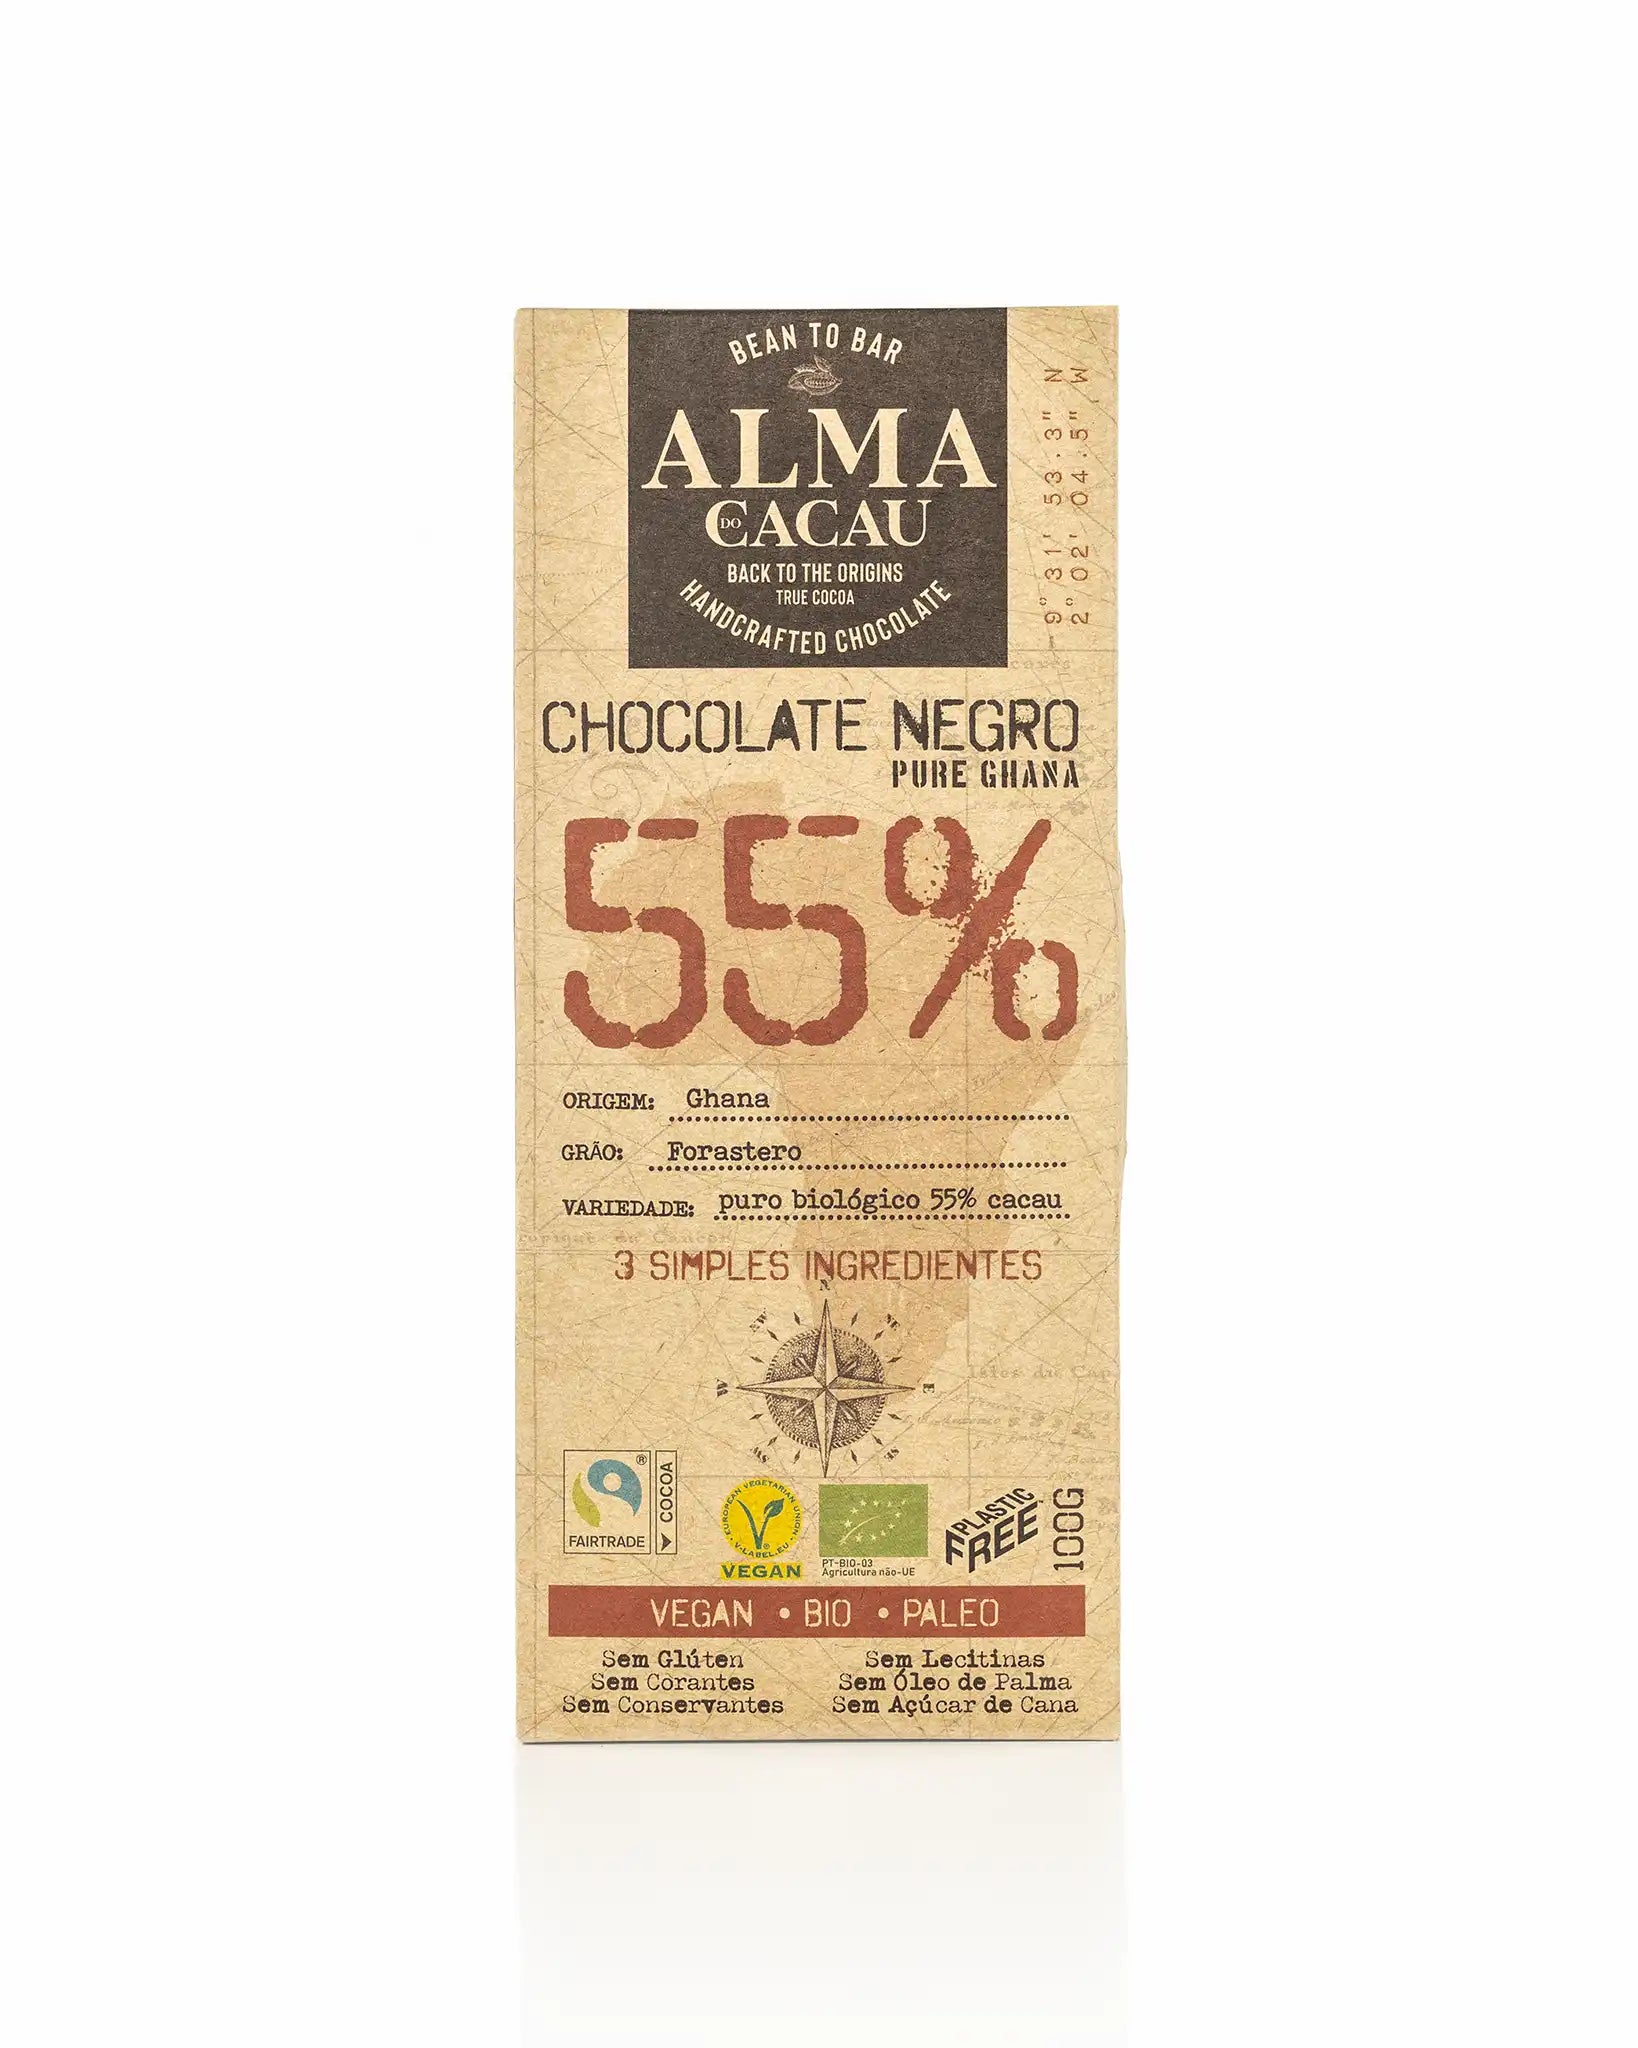 Chocolate Negro BIO 55% Cacau Alma do Cacau 100 g (imagem apenas demonstrativa)